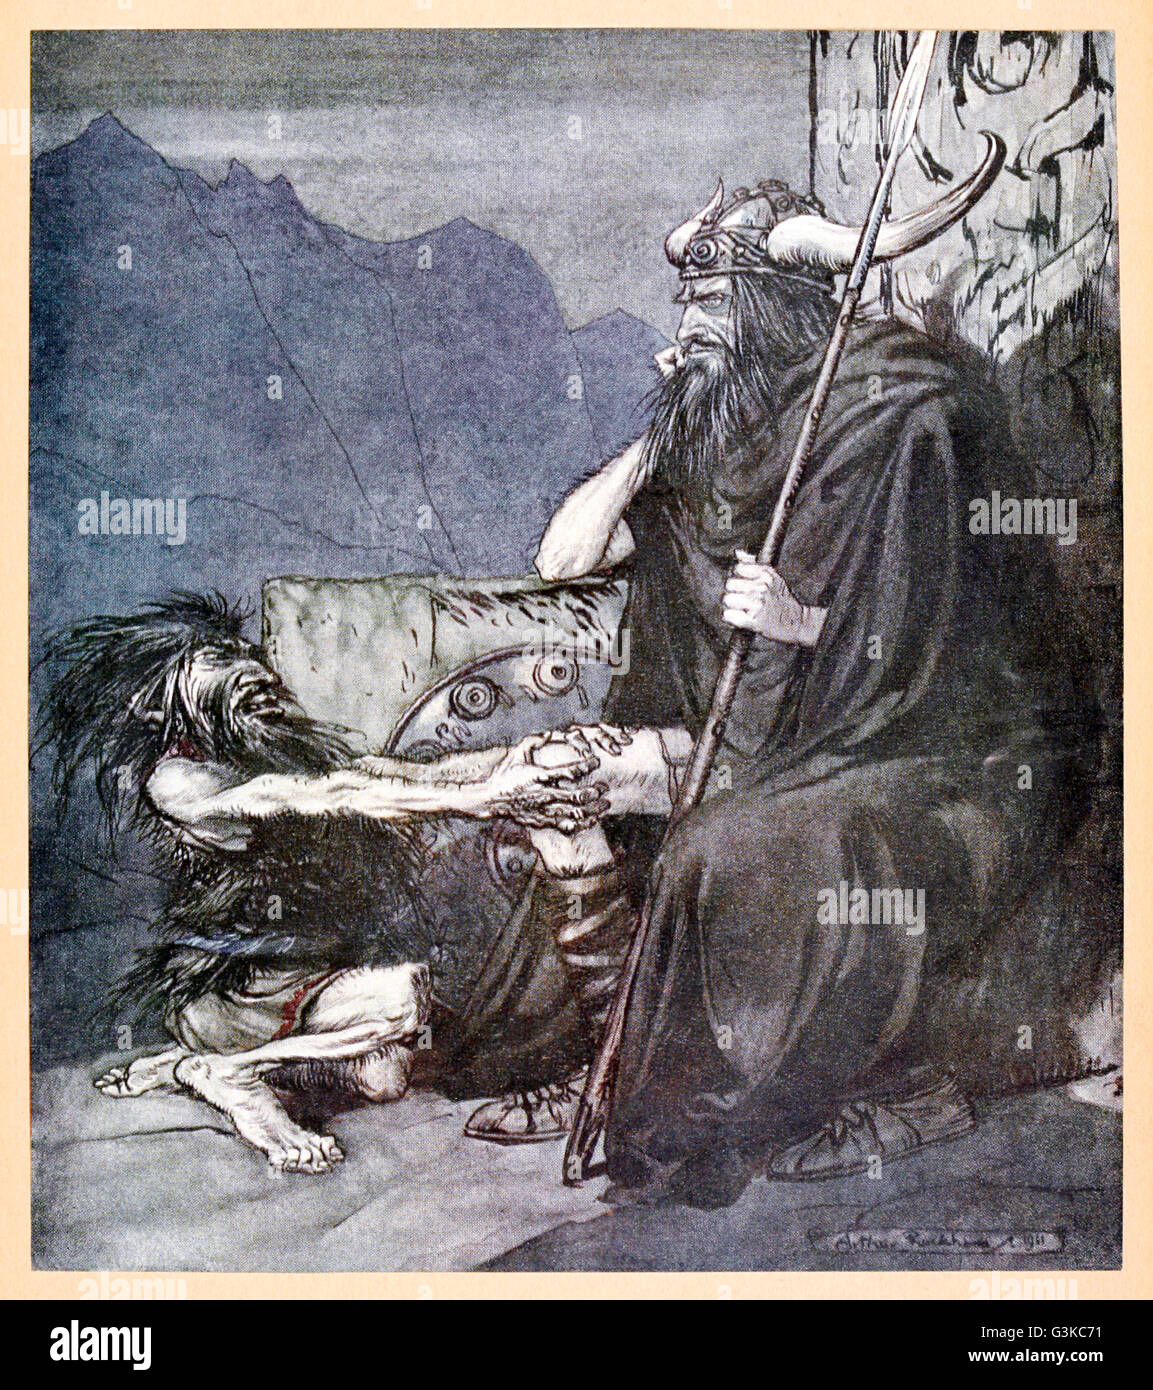 "Jure-moi, Hagen, mon fils !" de Siegfried "& Le Crépuscule des dieux' illustré par Arthur Rackham (1867-1939). Voir la description pour plus d'informations. Banque D'Images